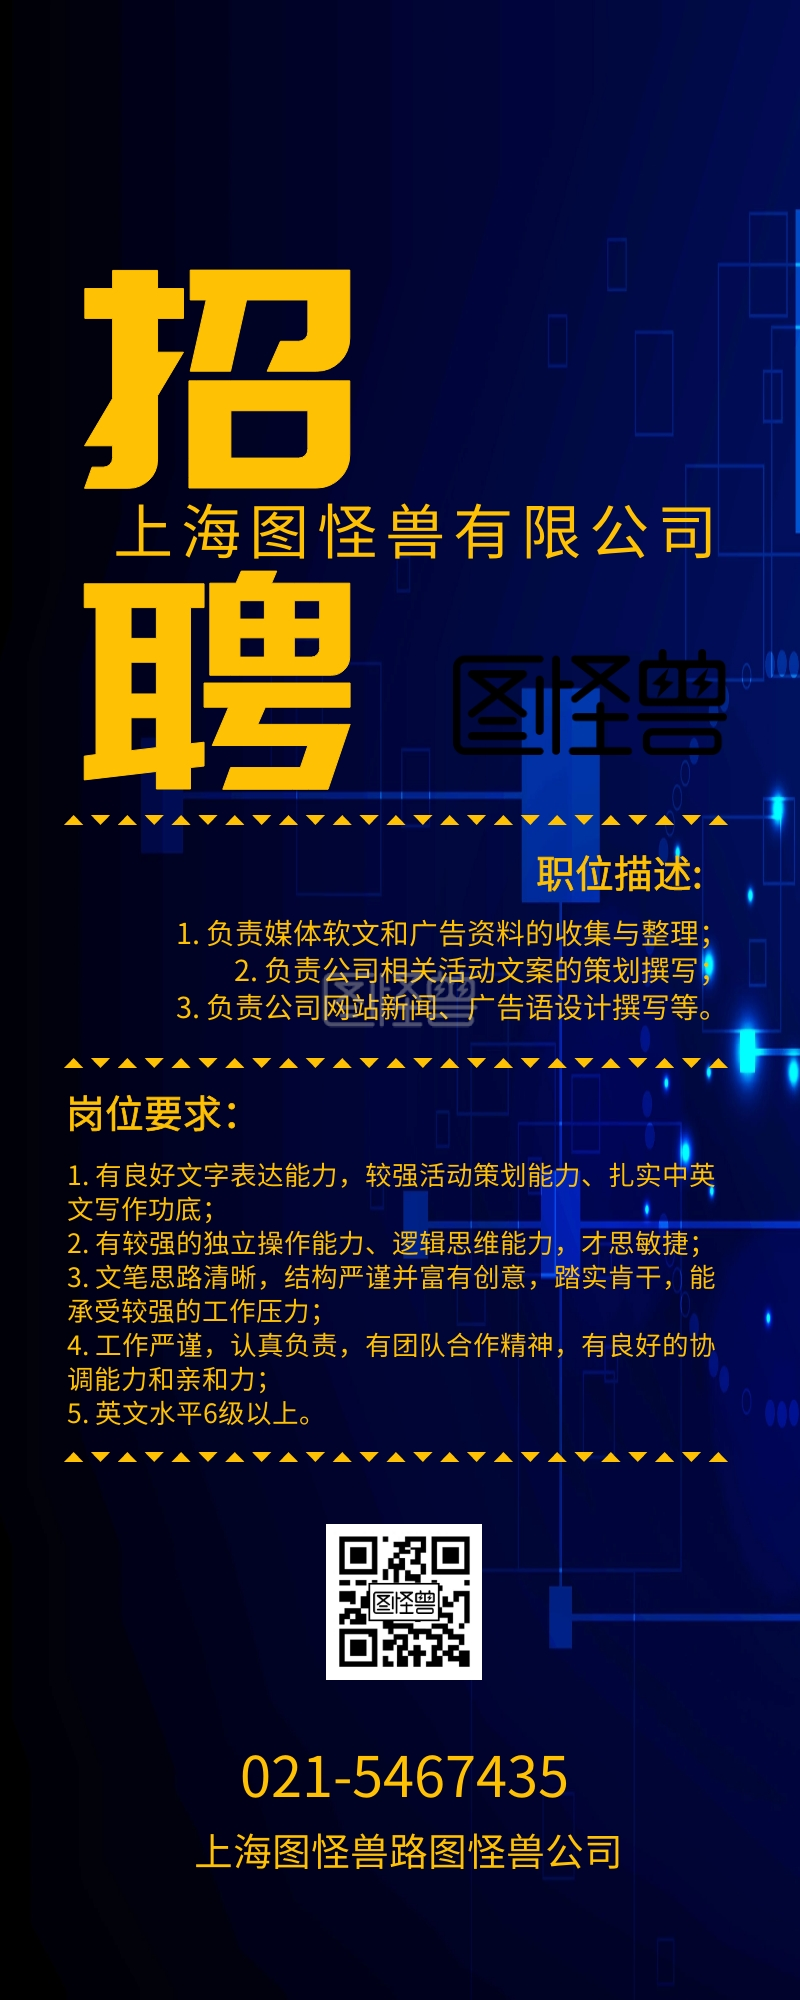 广州亿勤企业管理咨询有限公司诚聘中文编辑-网页编辑 2